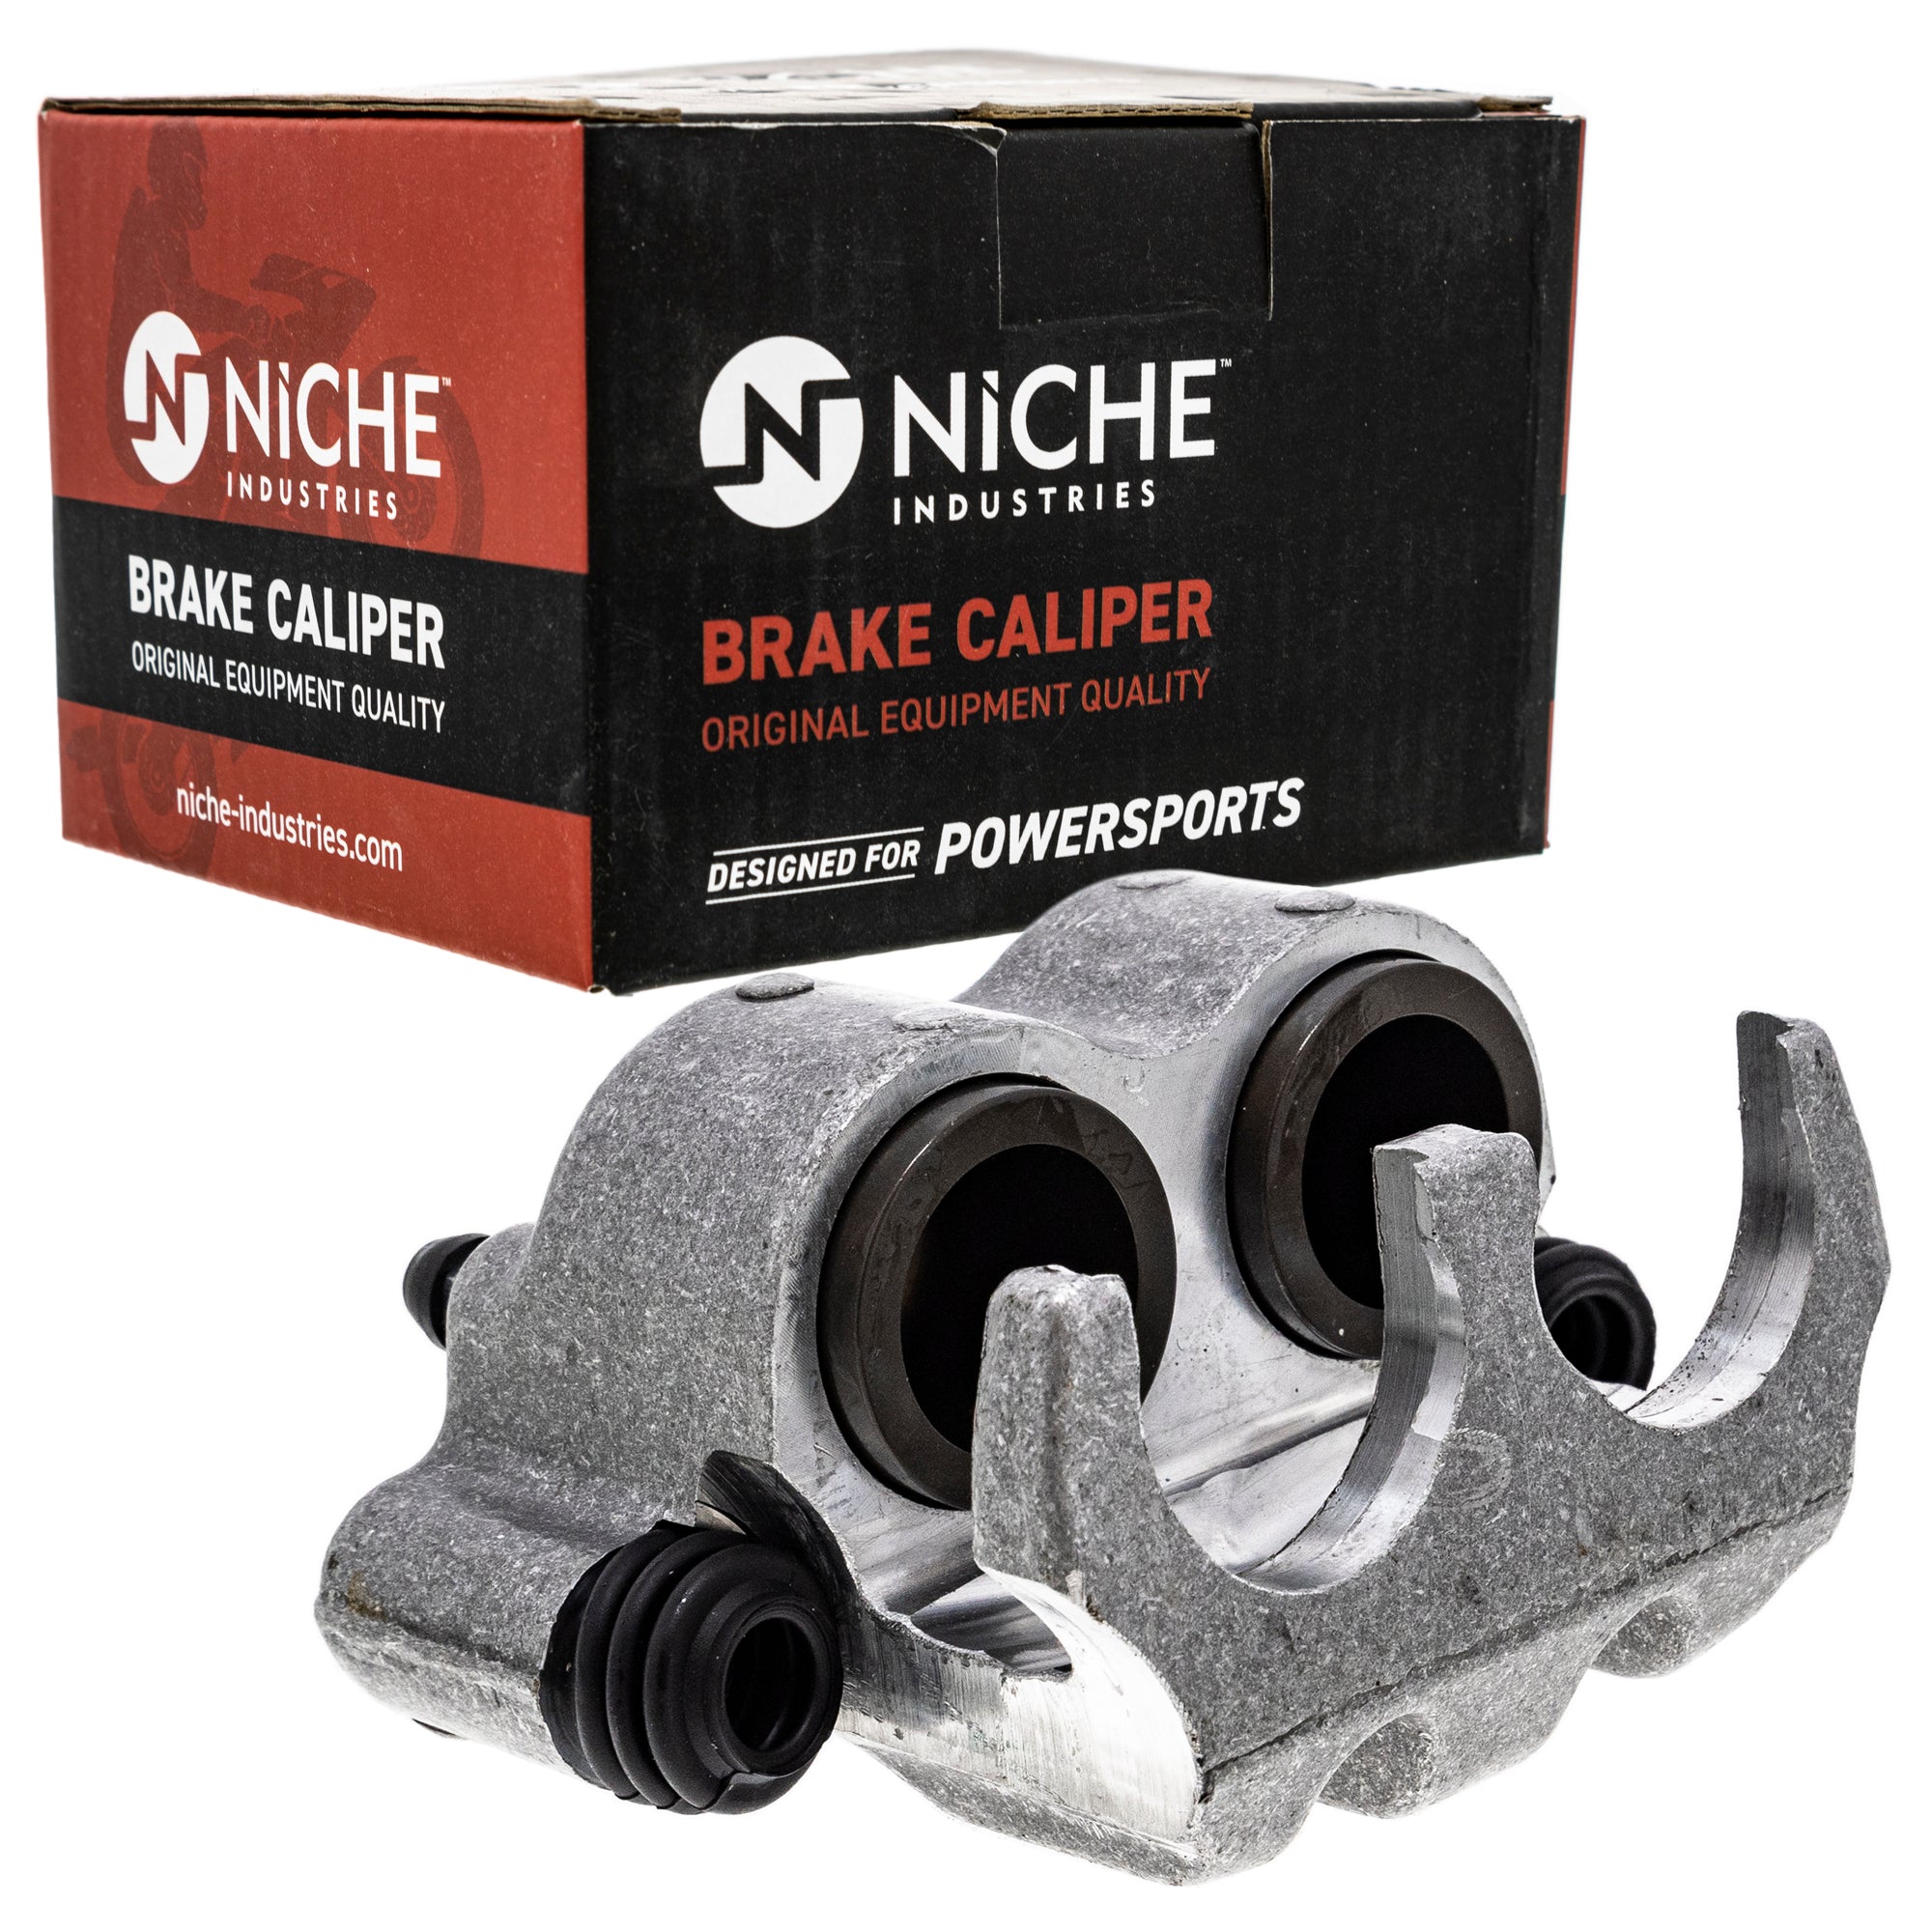 NICHE MK1001052 Brake Caliper Kit